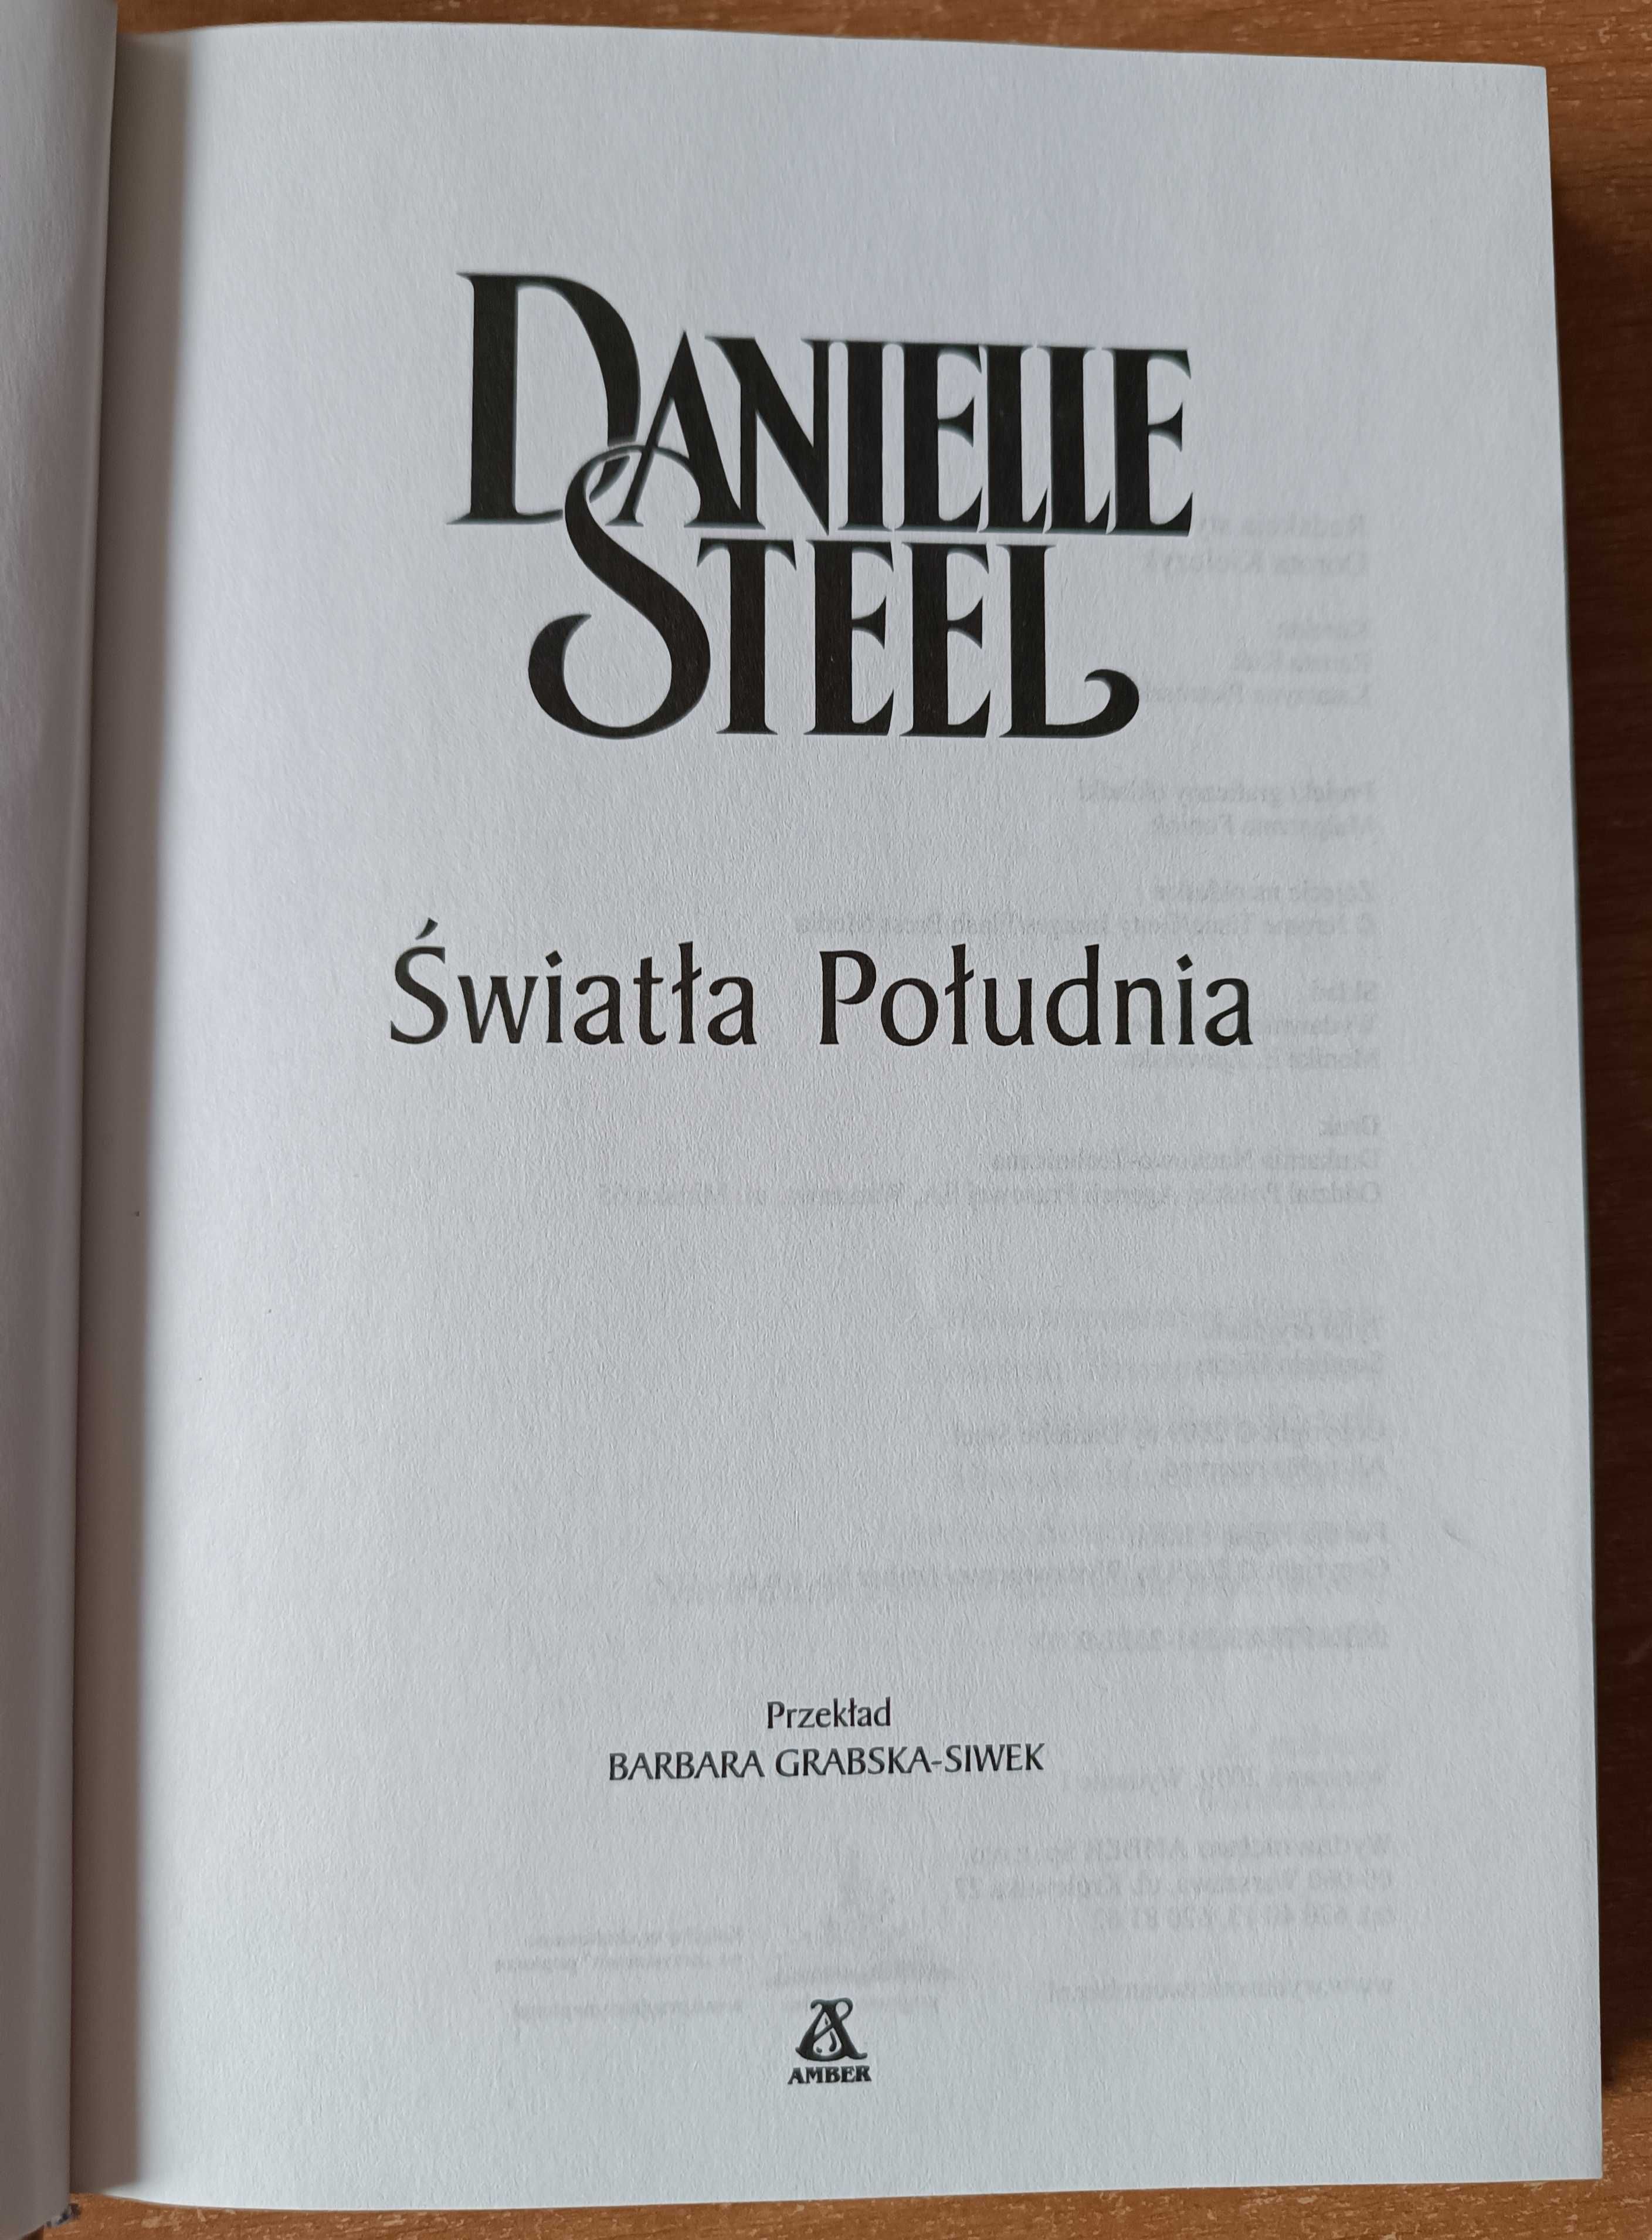 Książka "Światła Południa" Danielle Steel